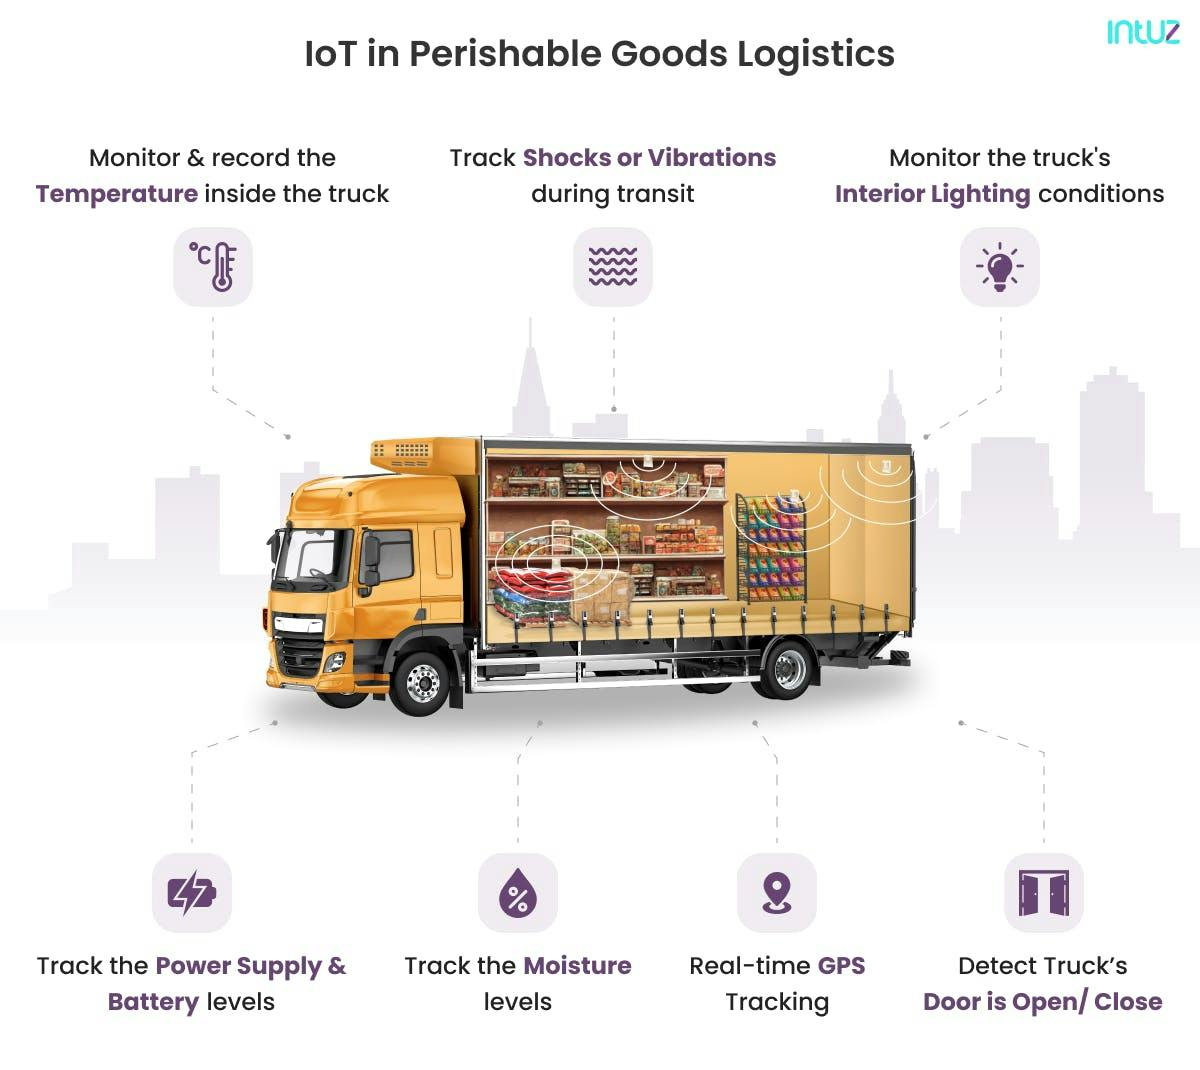 IoT in Perishable Goods Logistics